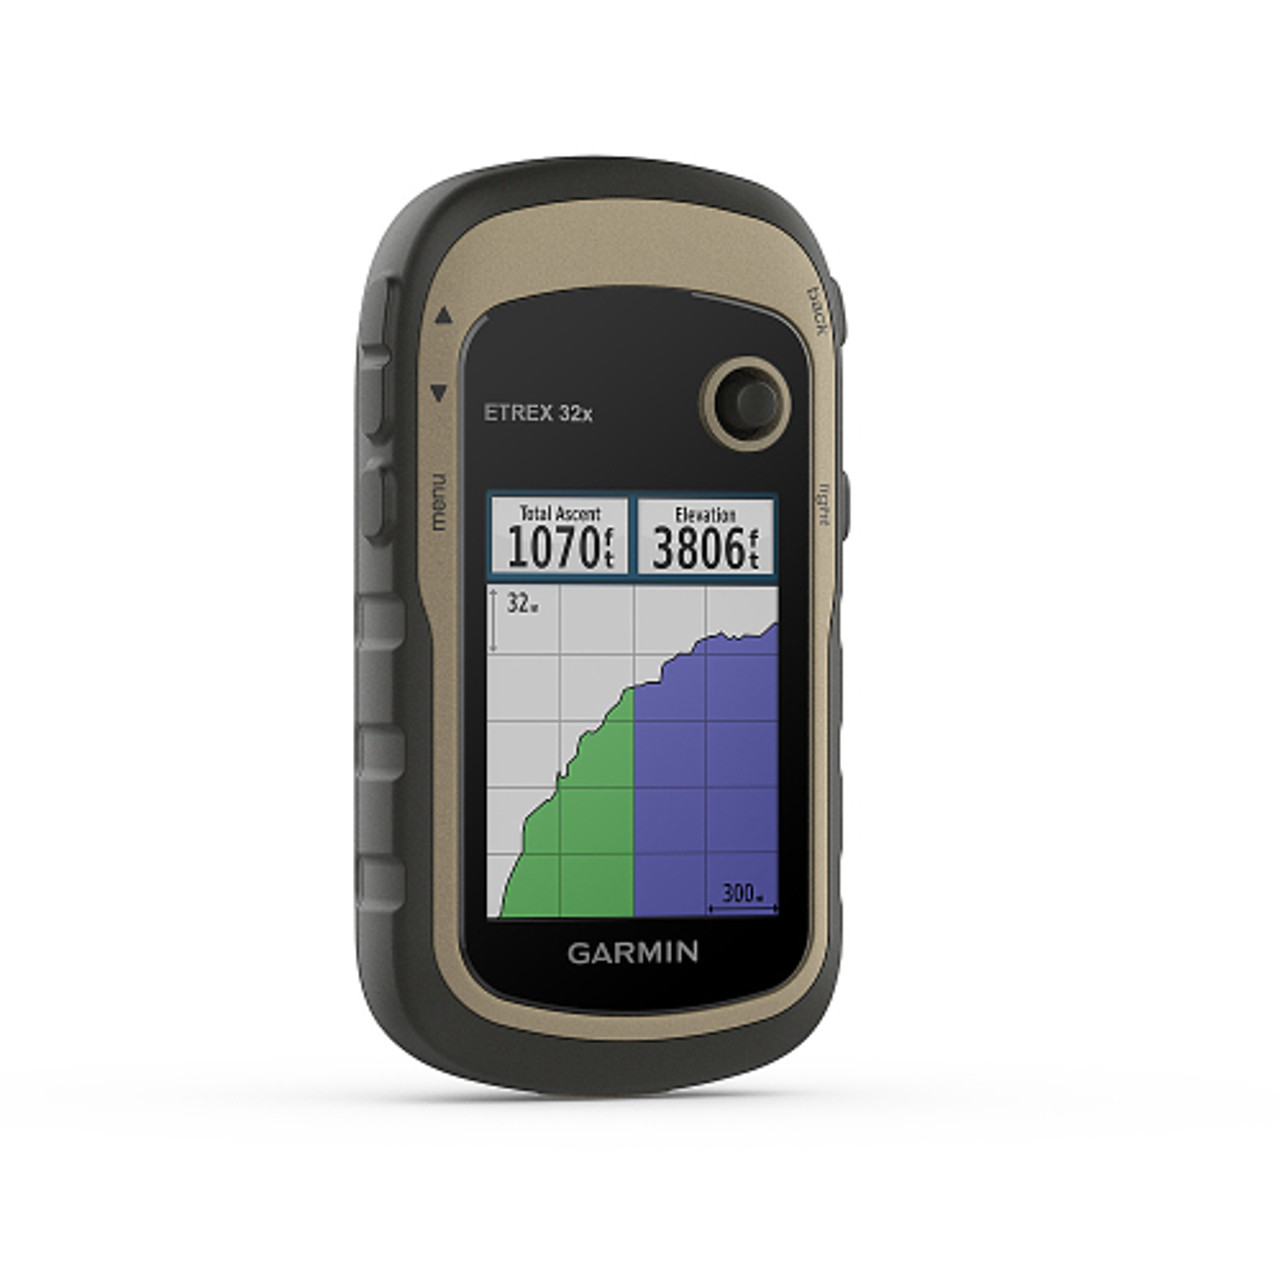 Garmin - eTrex 32x 2.2" GPS - Black